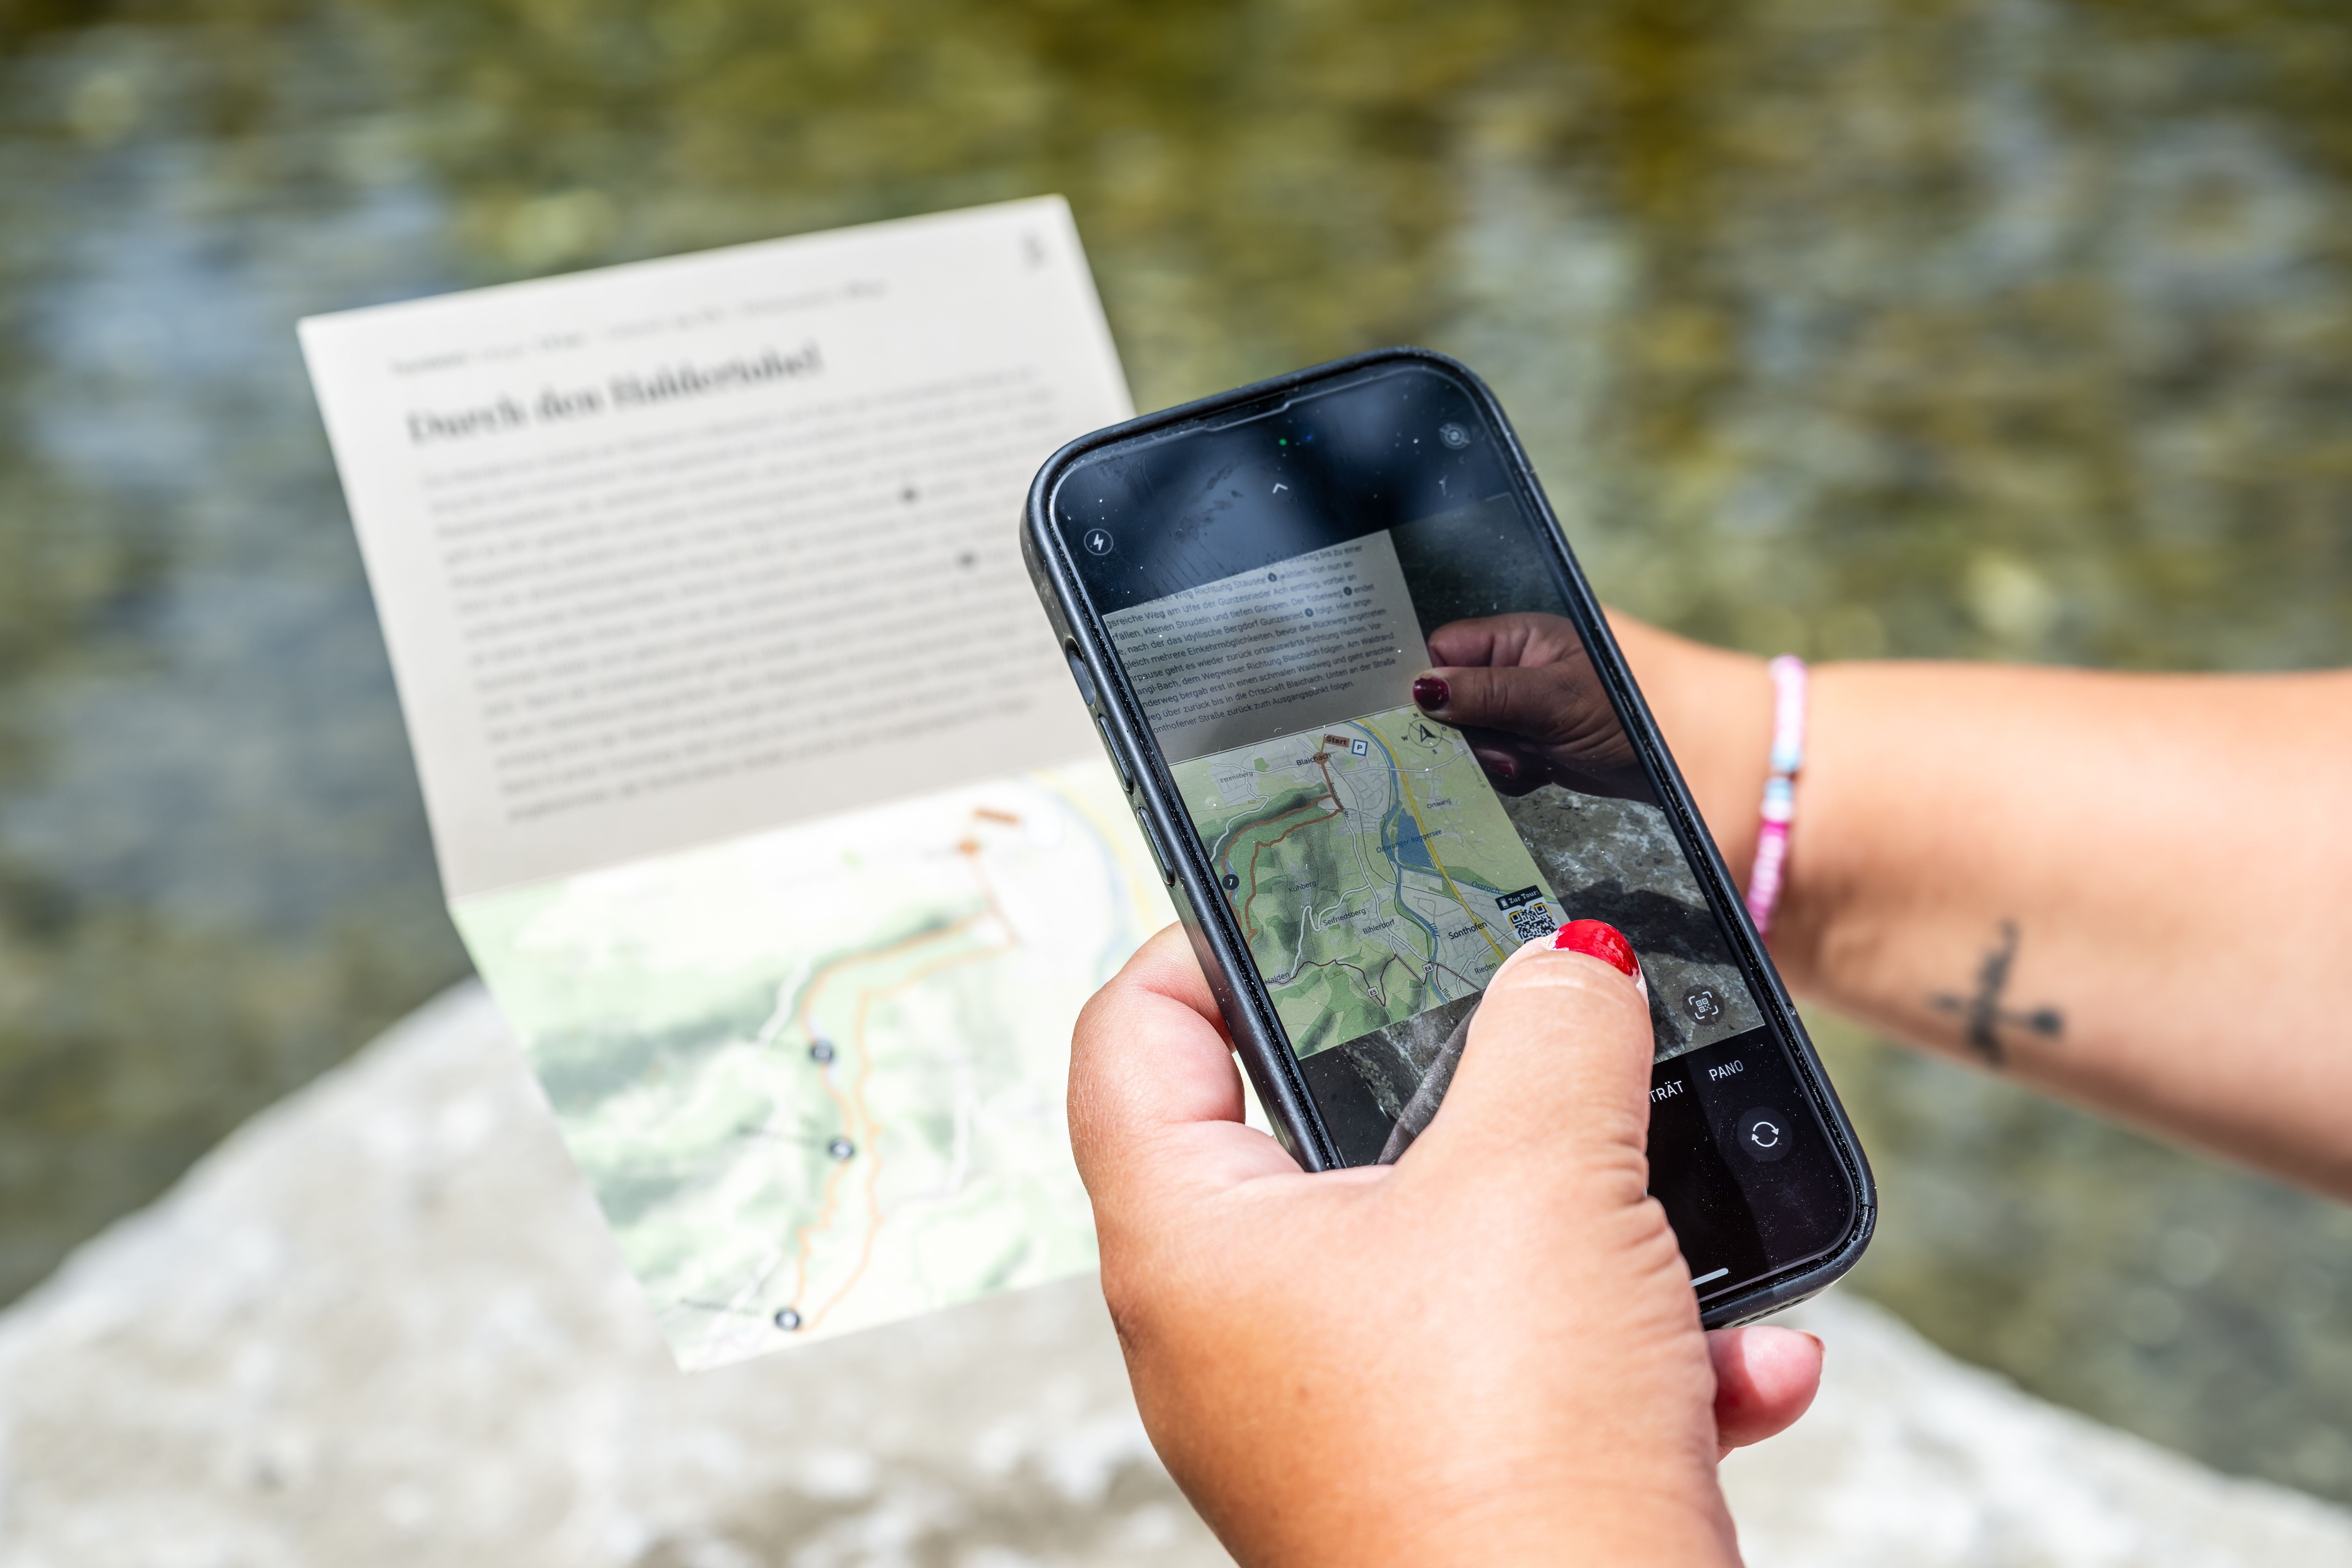 Auf den Tourensammelkarten von Alpsee-Grünten Tourismus befindet sich ein QR-Code der gescannt werden kann. Mit ihm gelangt man auf die digitale Tourenbeschreibung.